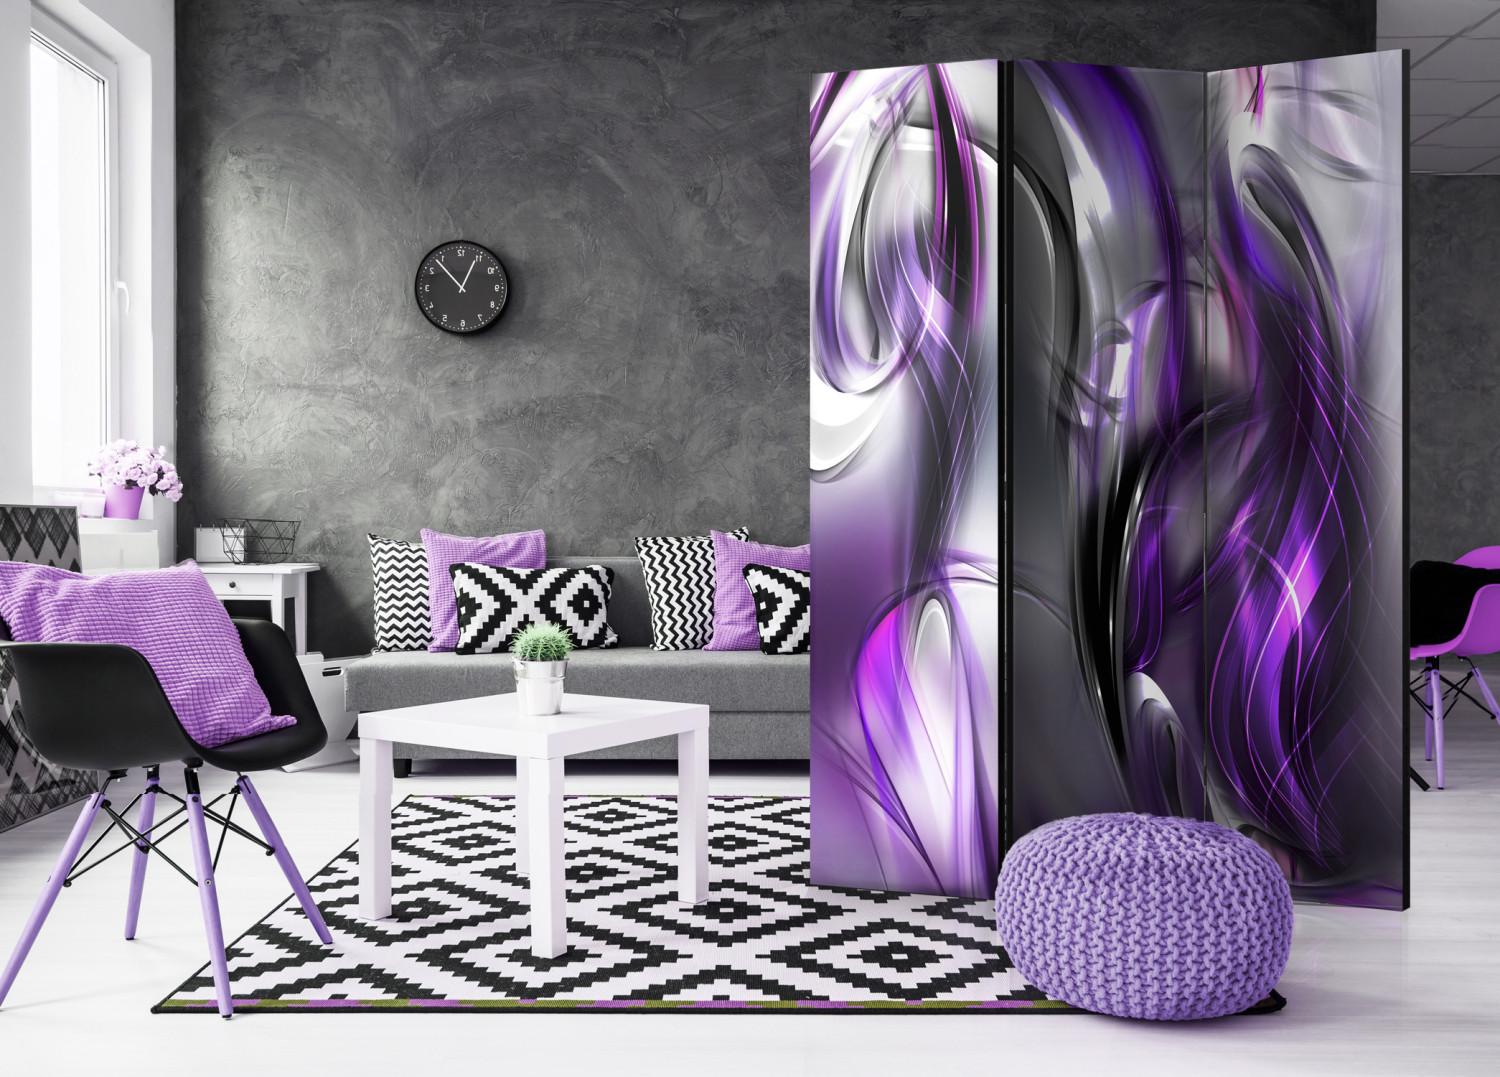 Biombo decorativo Girar púrpura - flor en espiral